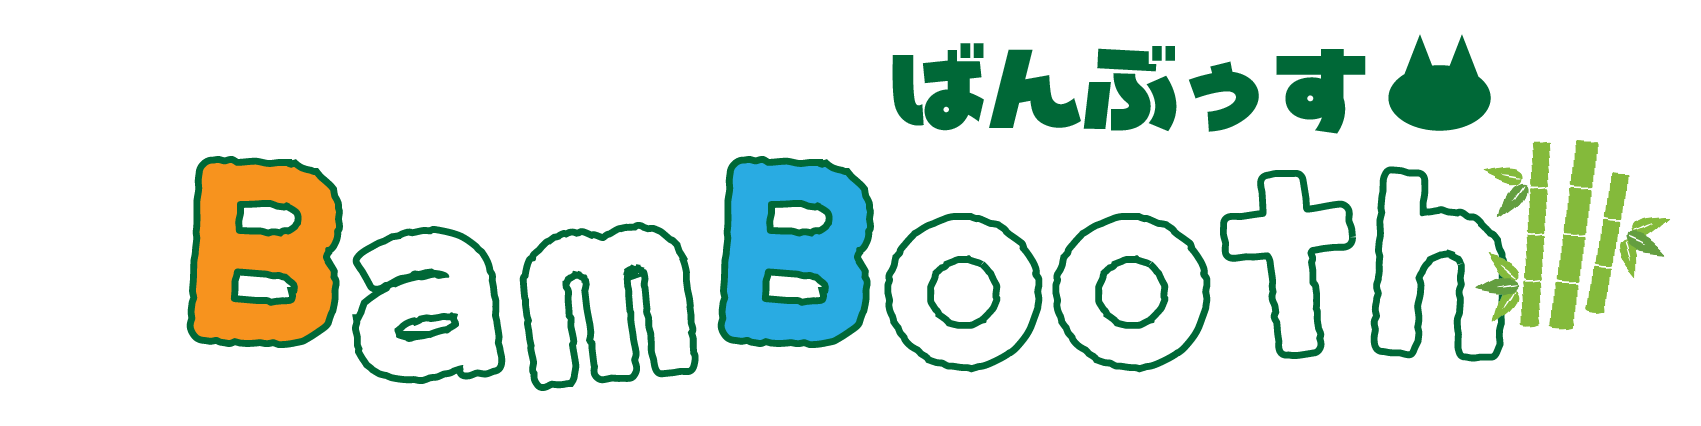 ばんぶぅす-Bambooth-[株式会社Bounce back公式オンラインストア]